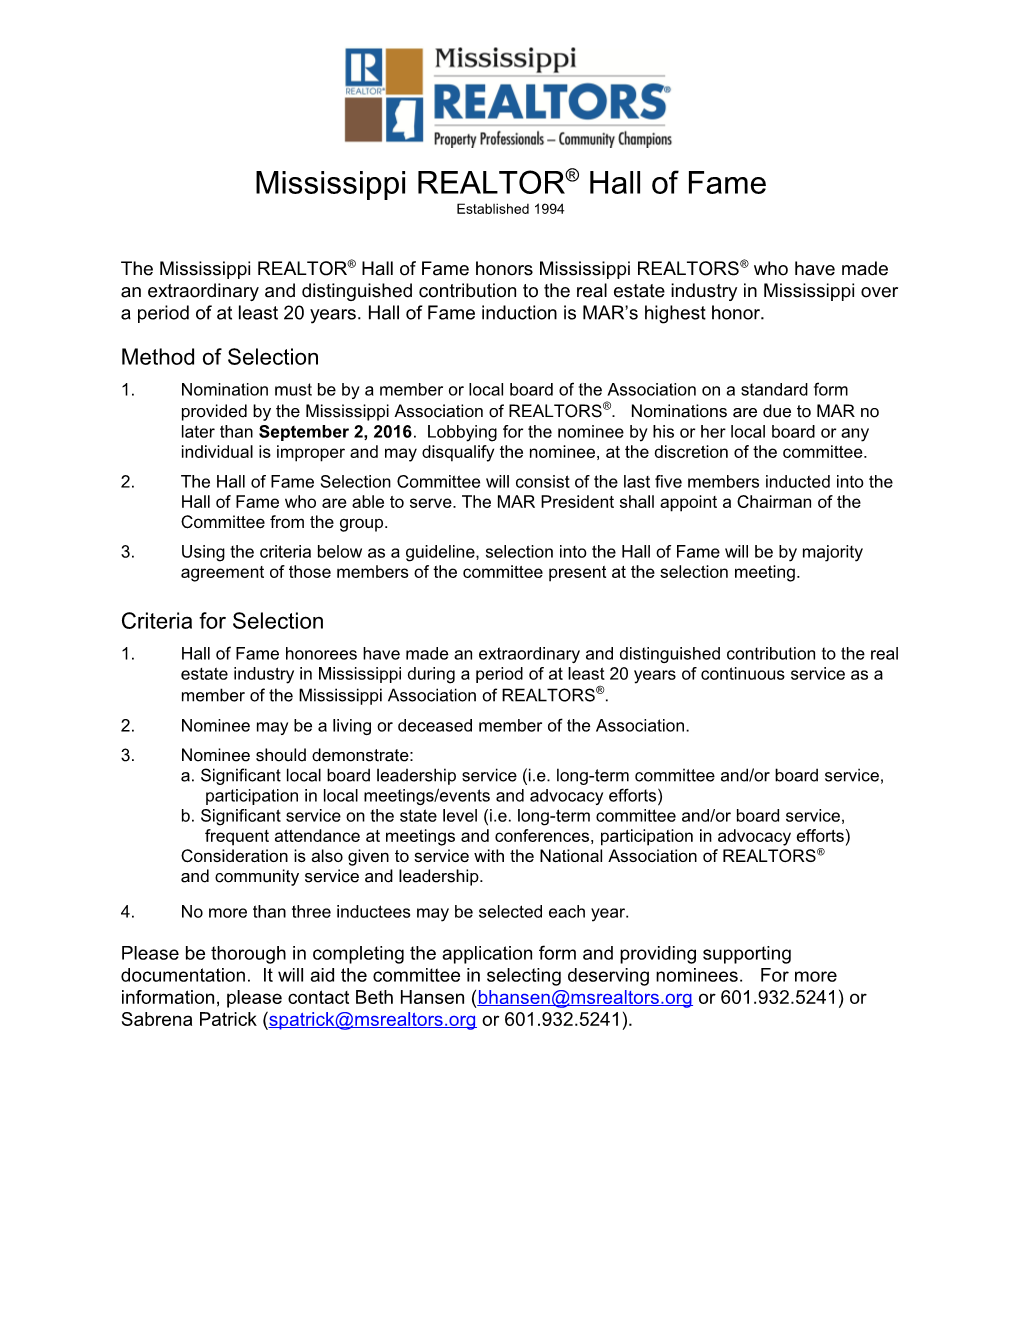 Mississippi REALTOR Hall of Fame